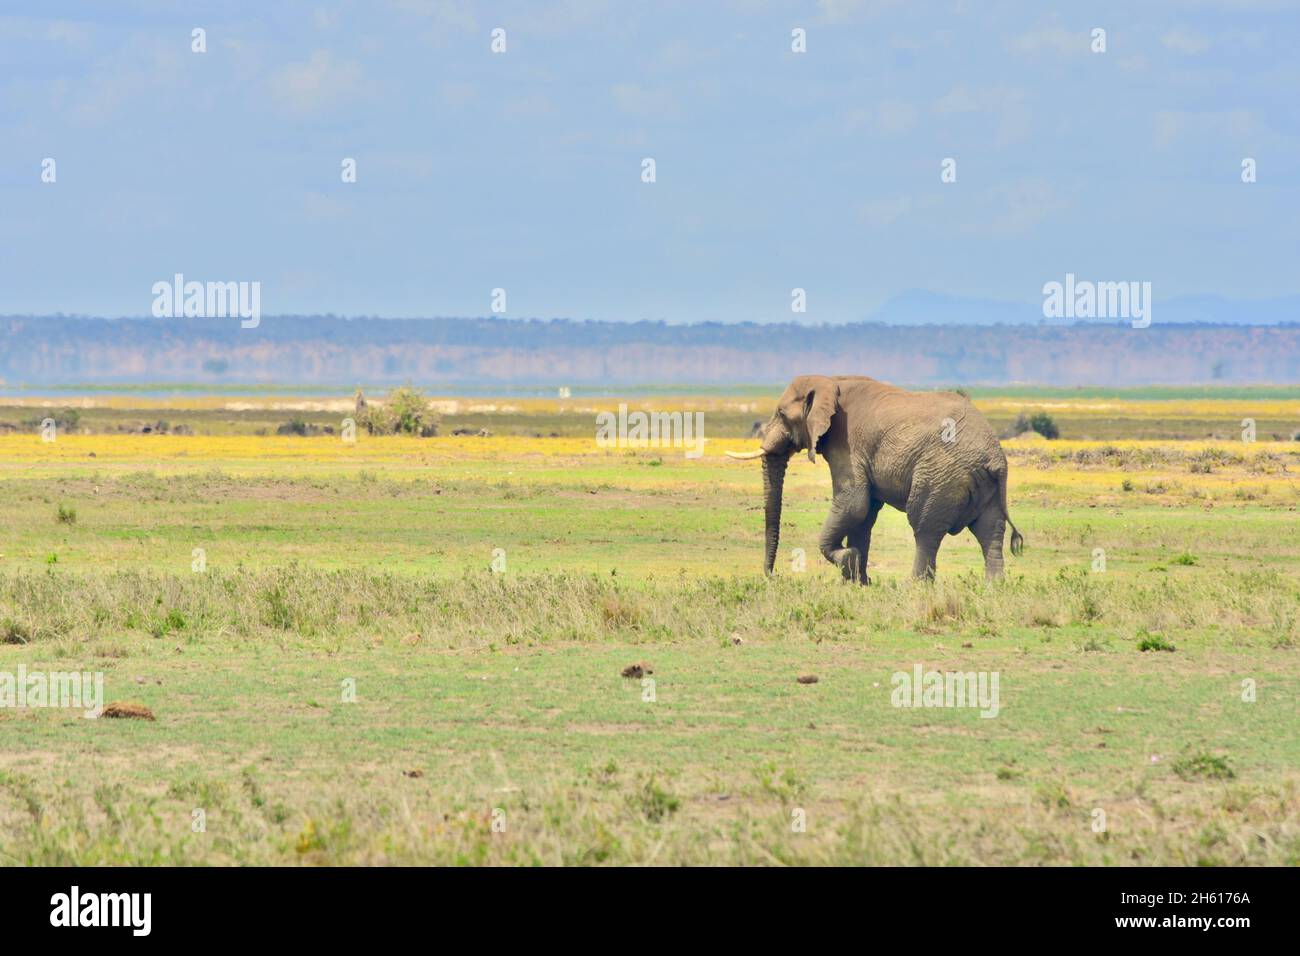 Elefante toro solitario (Loxodonta africana) en movimiento sobre una pradera en el Parque Nacional Amboseli, Kenia. Foto de stock